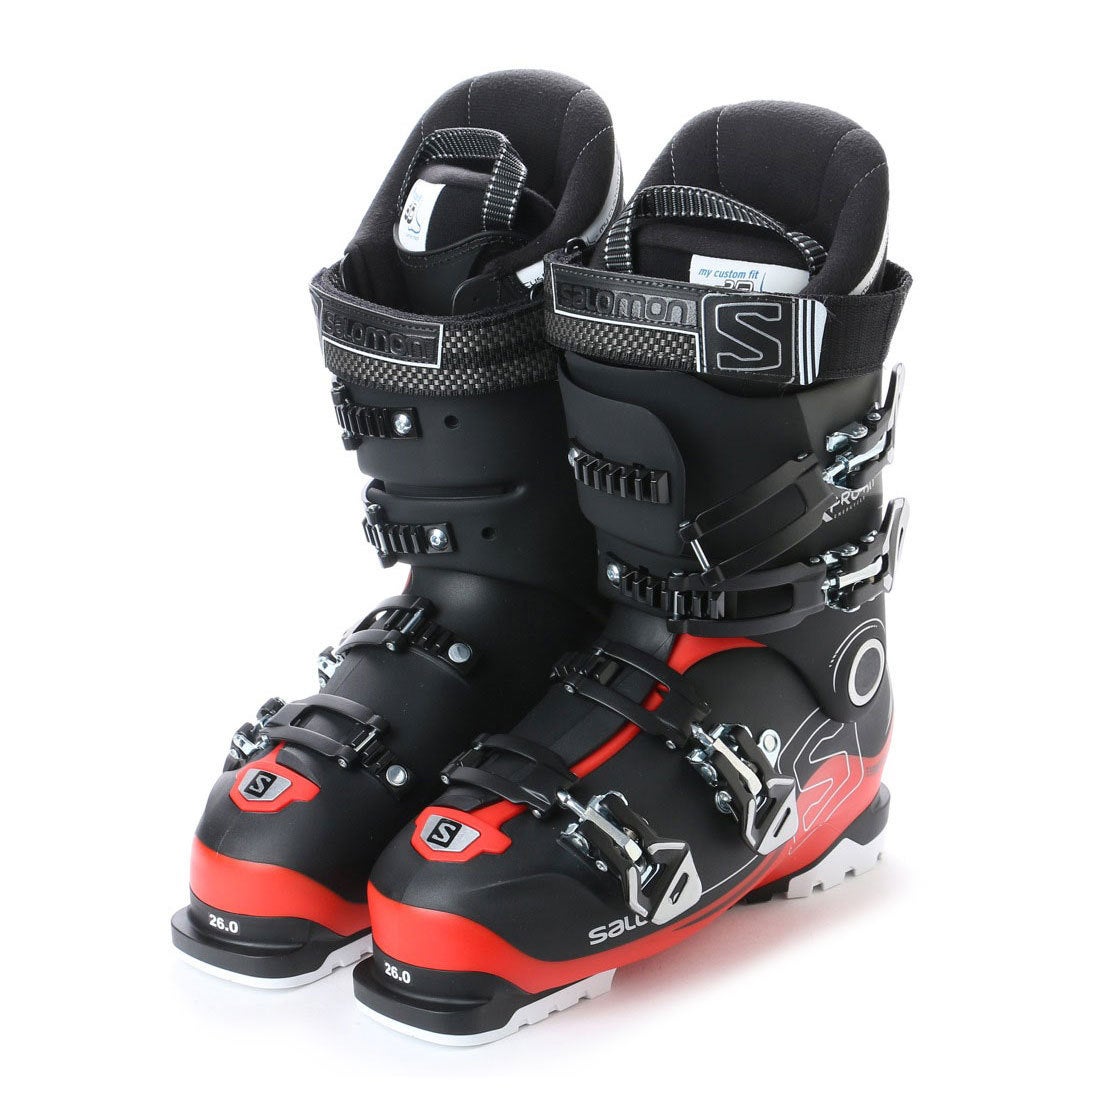 Salomon X Pro 80 Ski Boots サロモン スキーブーツ